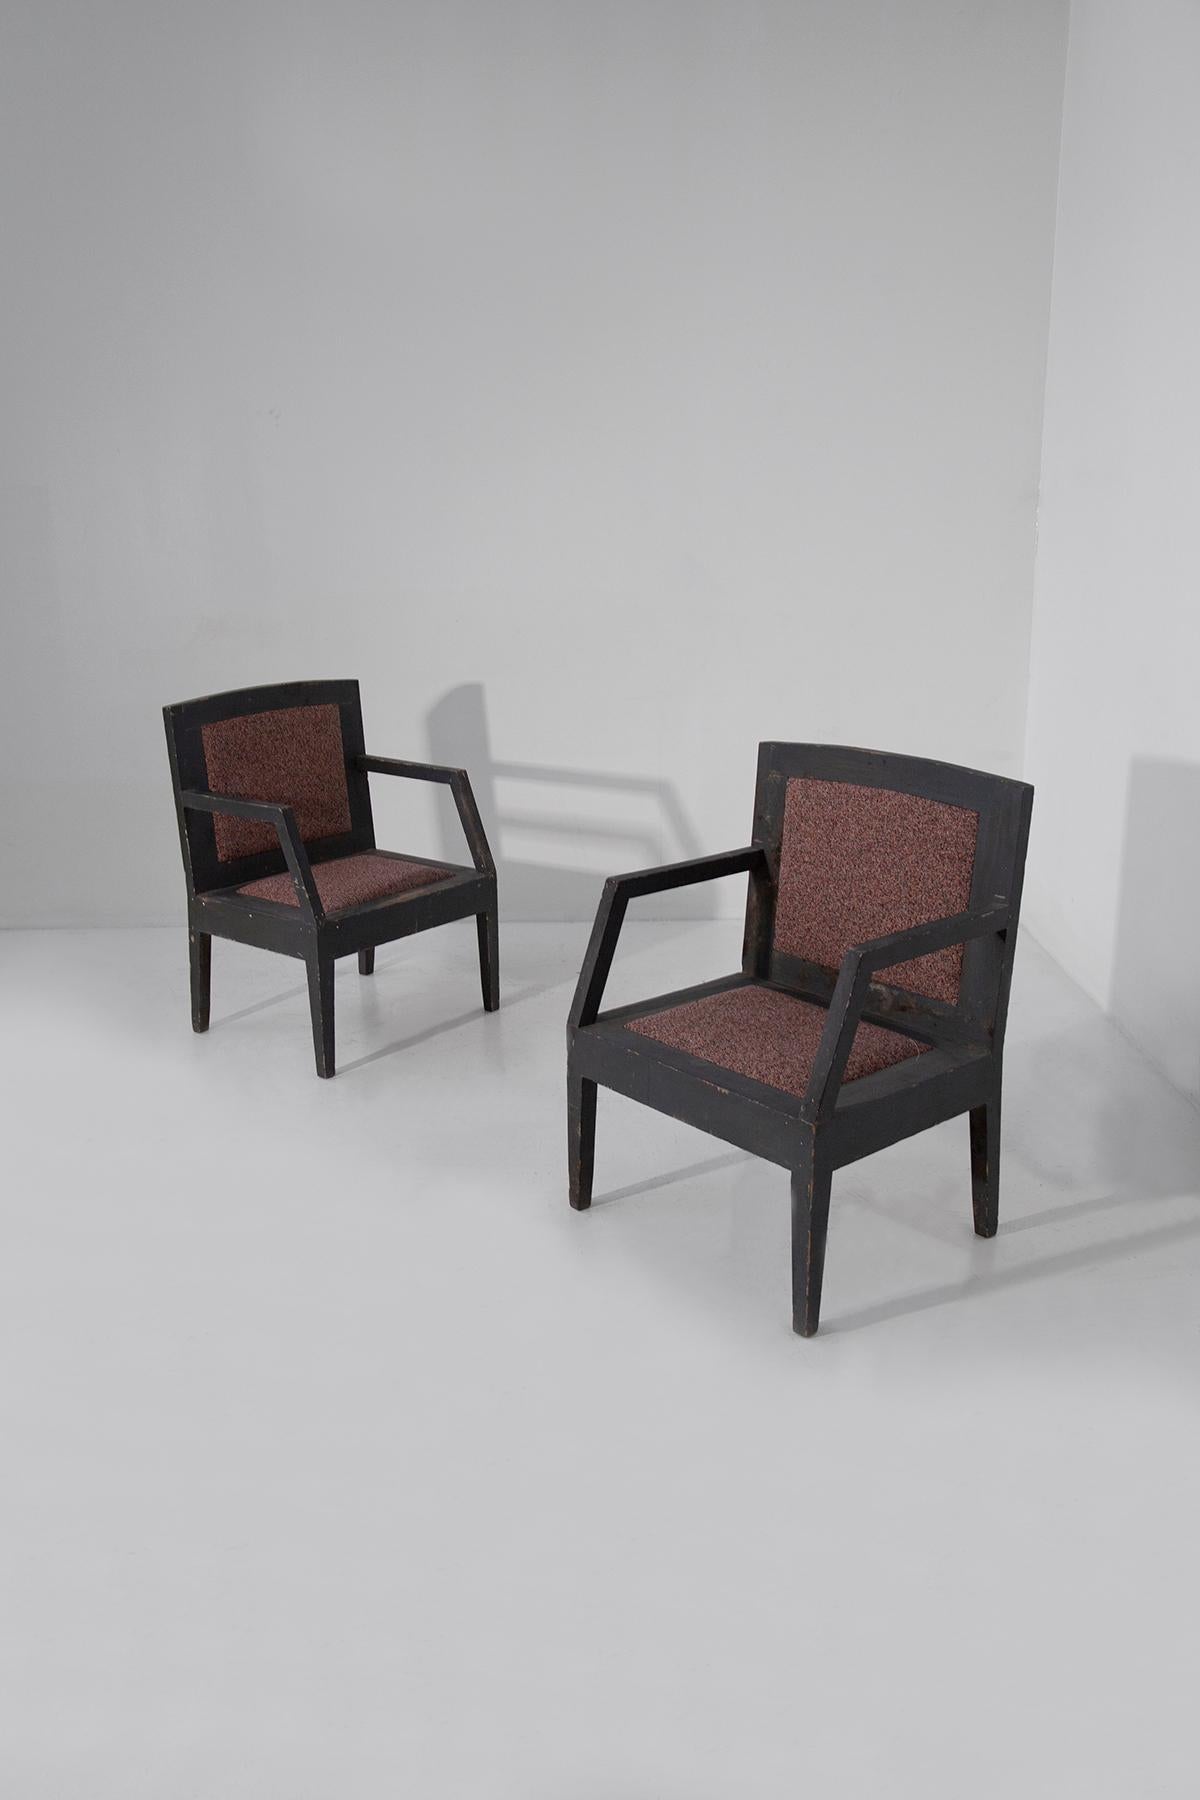 Entrez dans un portail d'innovation artistique et de Revere historique avec cette remarquable paire de fauteuils futuristes italiens, datant de la période dynamique des années 1910-1915. Ces chaises ne sont pas de simples meubles ; elles sont